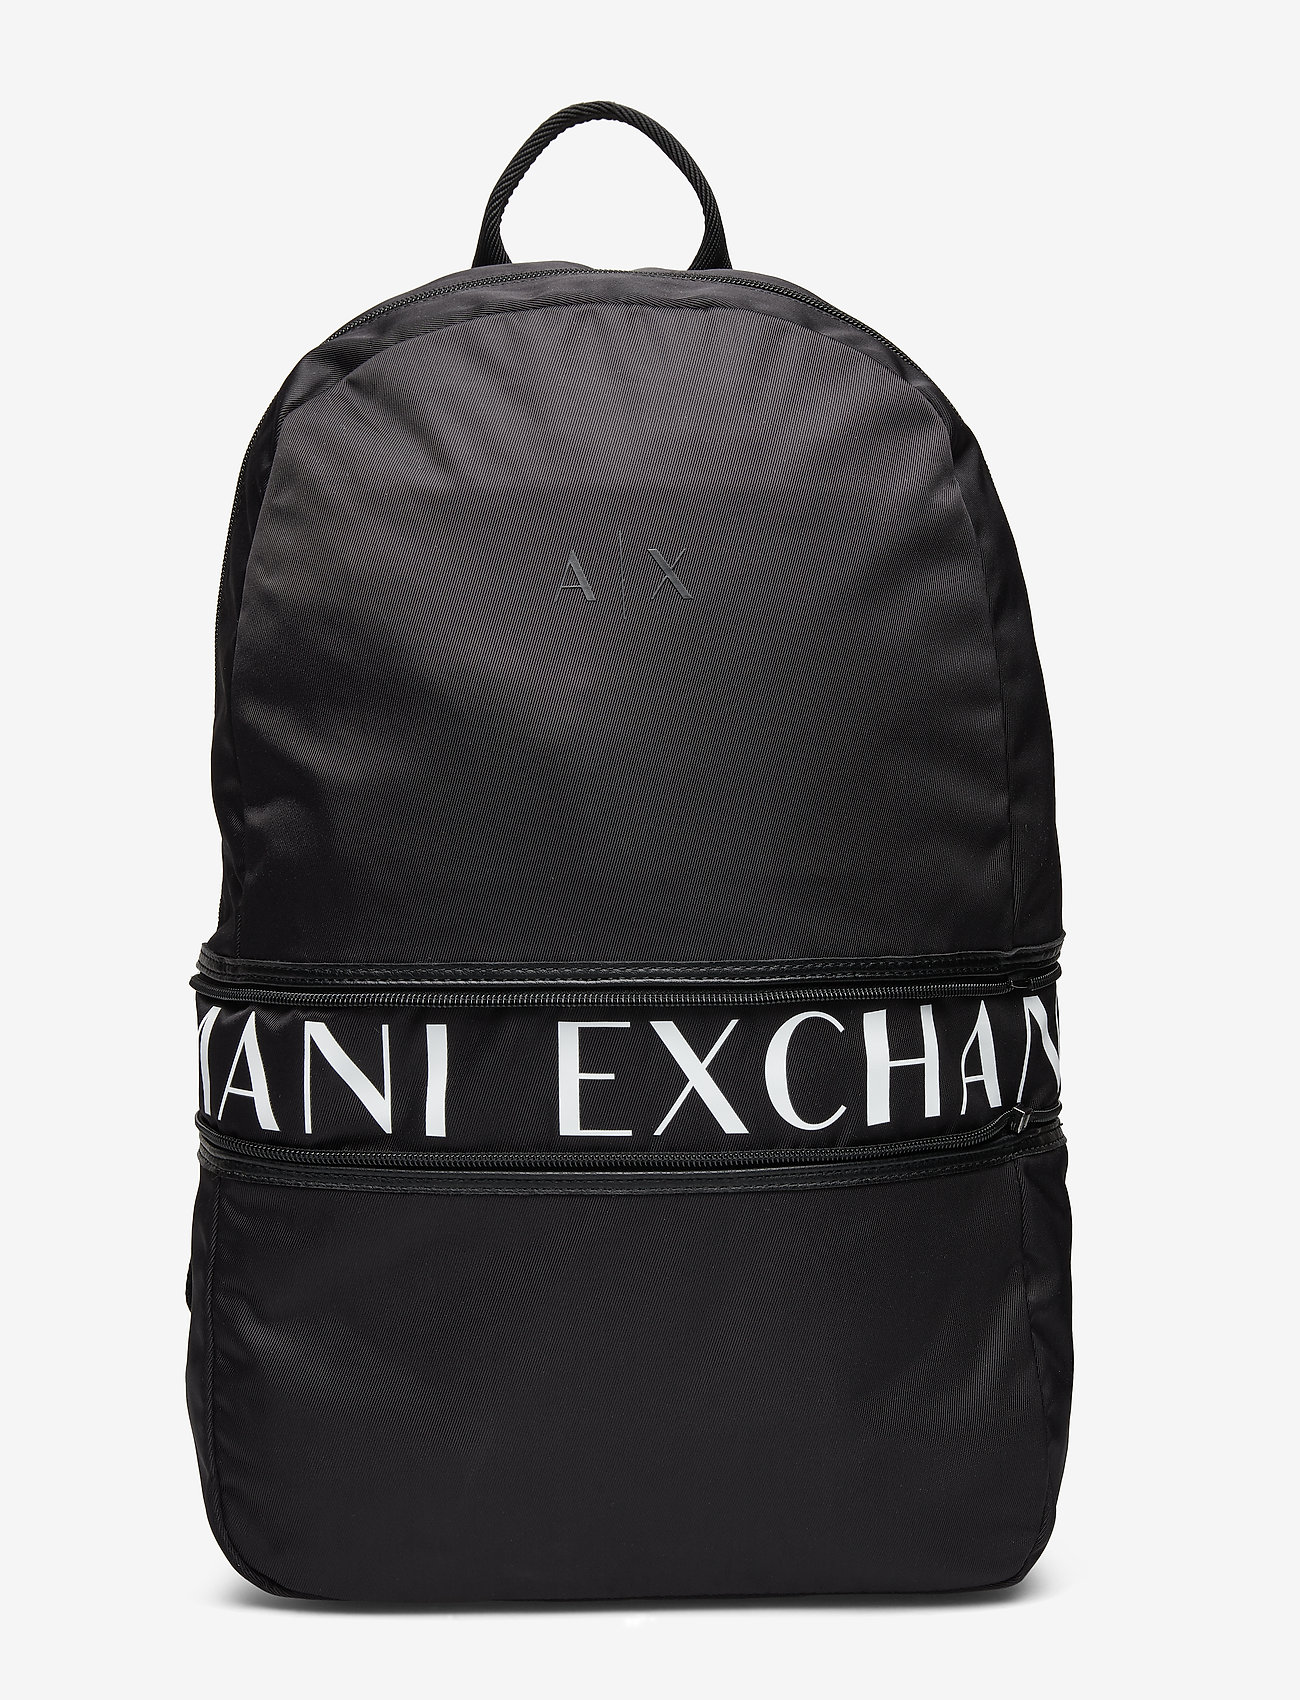 armani exchange backpack